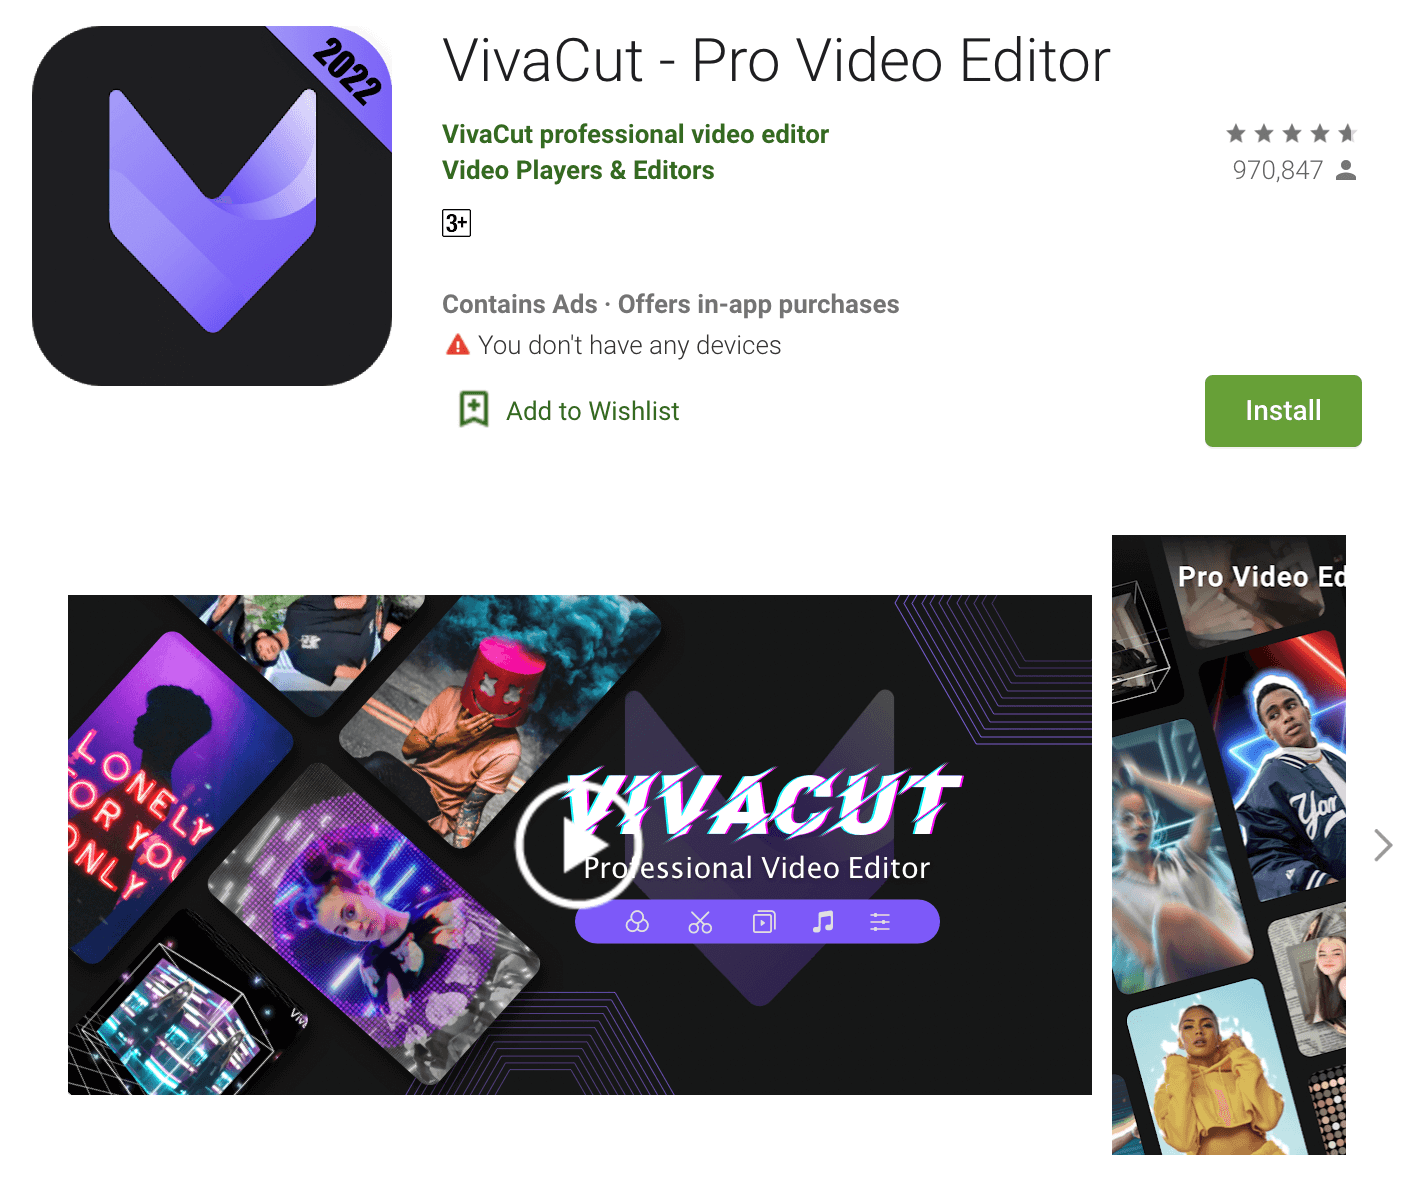 vivacut app